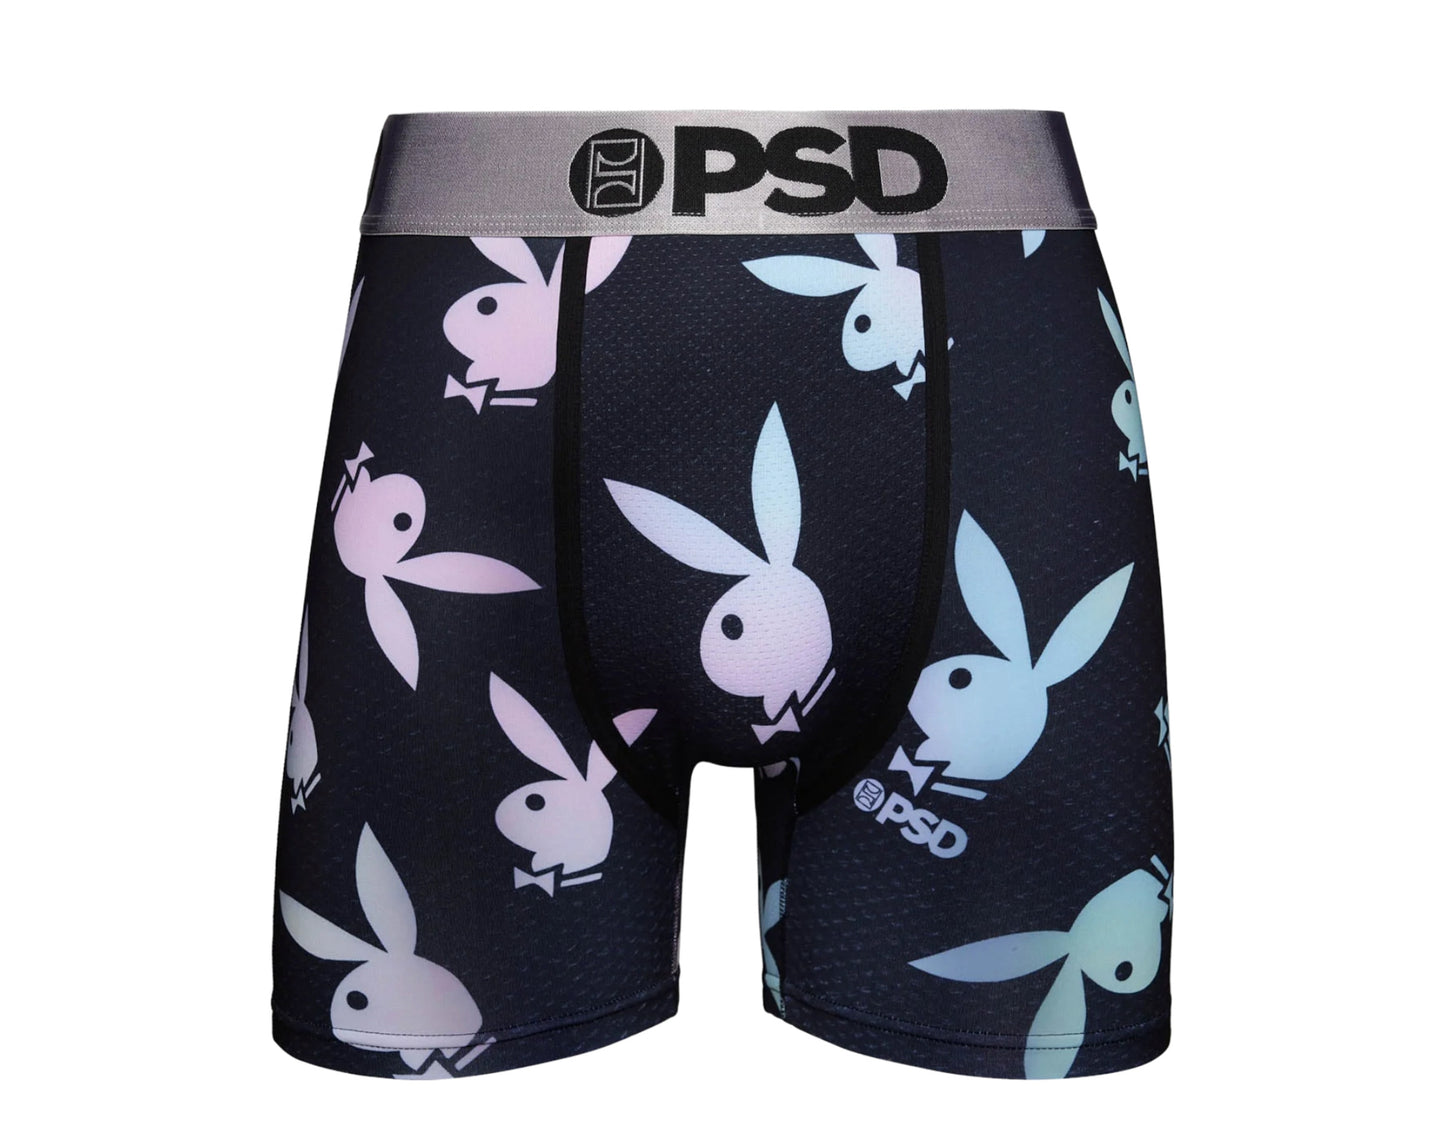 PSD x Playboy - Glow Briefs Men's Underwear